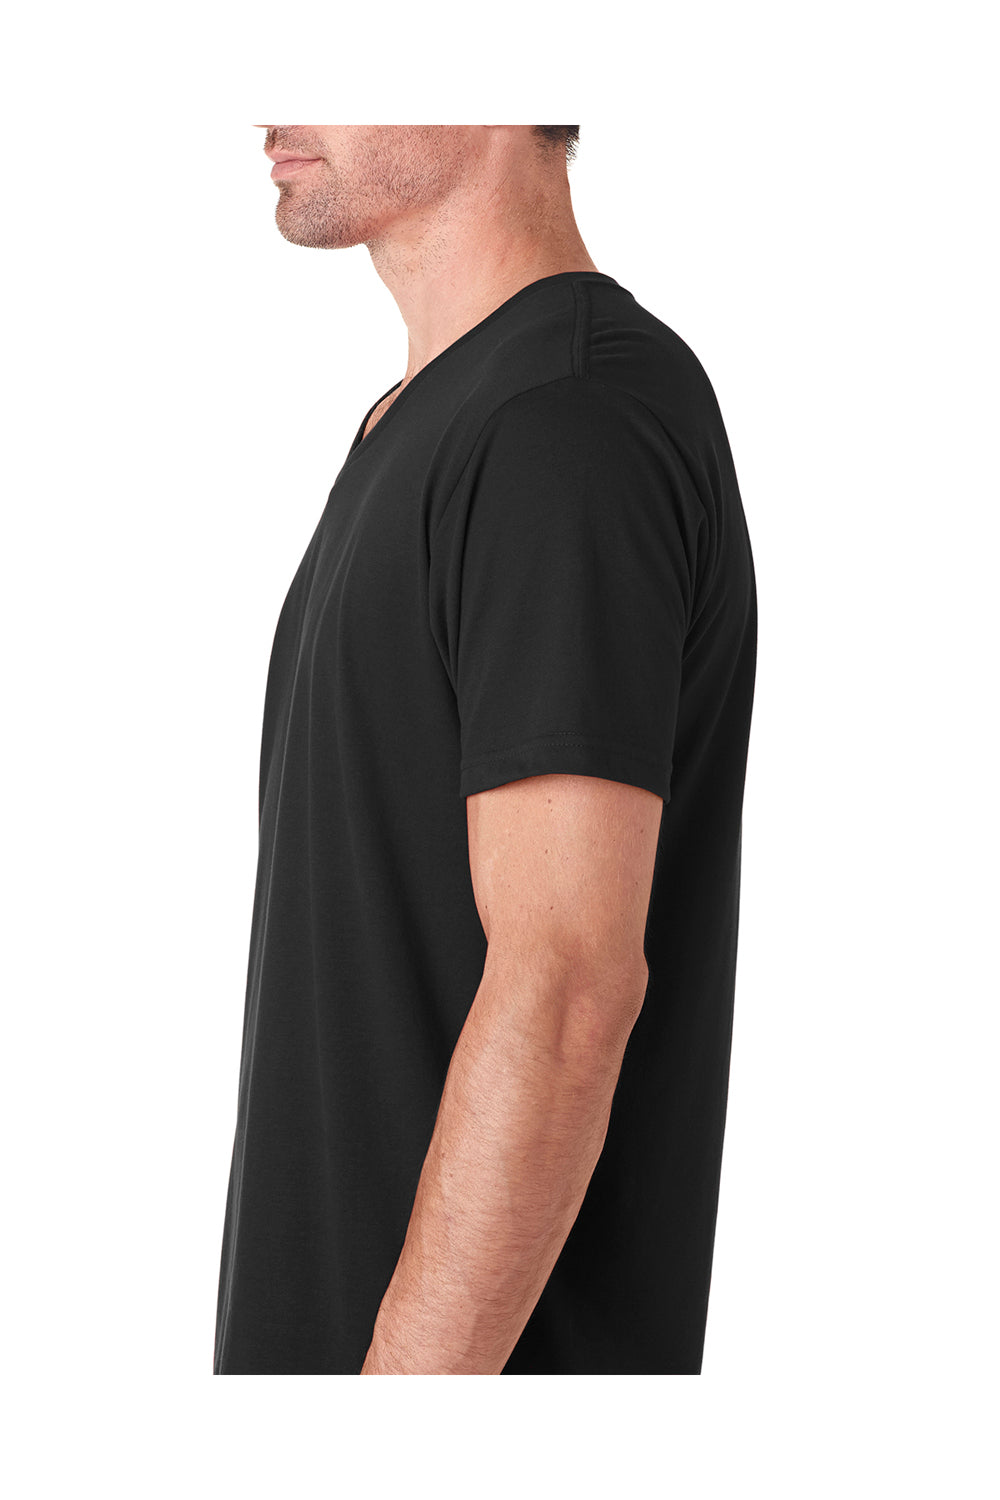 Next Level 6440 Mens Sueded Jersey Short Sleeve V-Neck T-Shirt Black Side